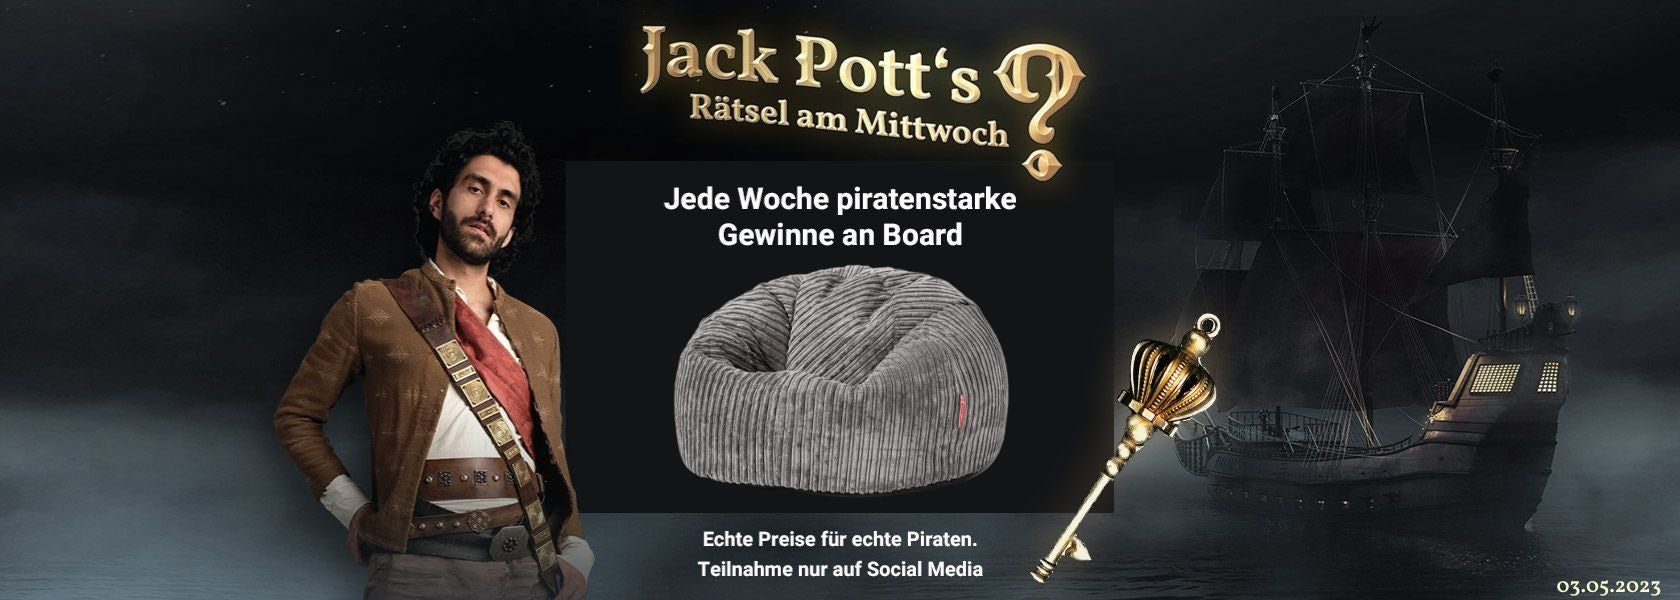 JPI-Header-Jack-Potts-Rätsel-Am-Mittwoch-0305